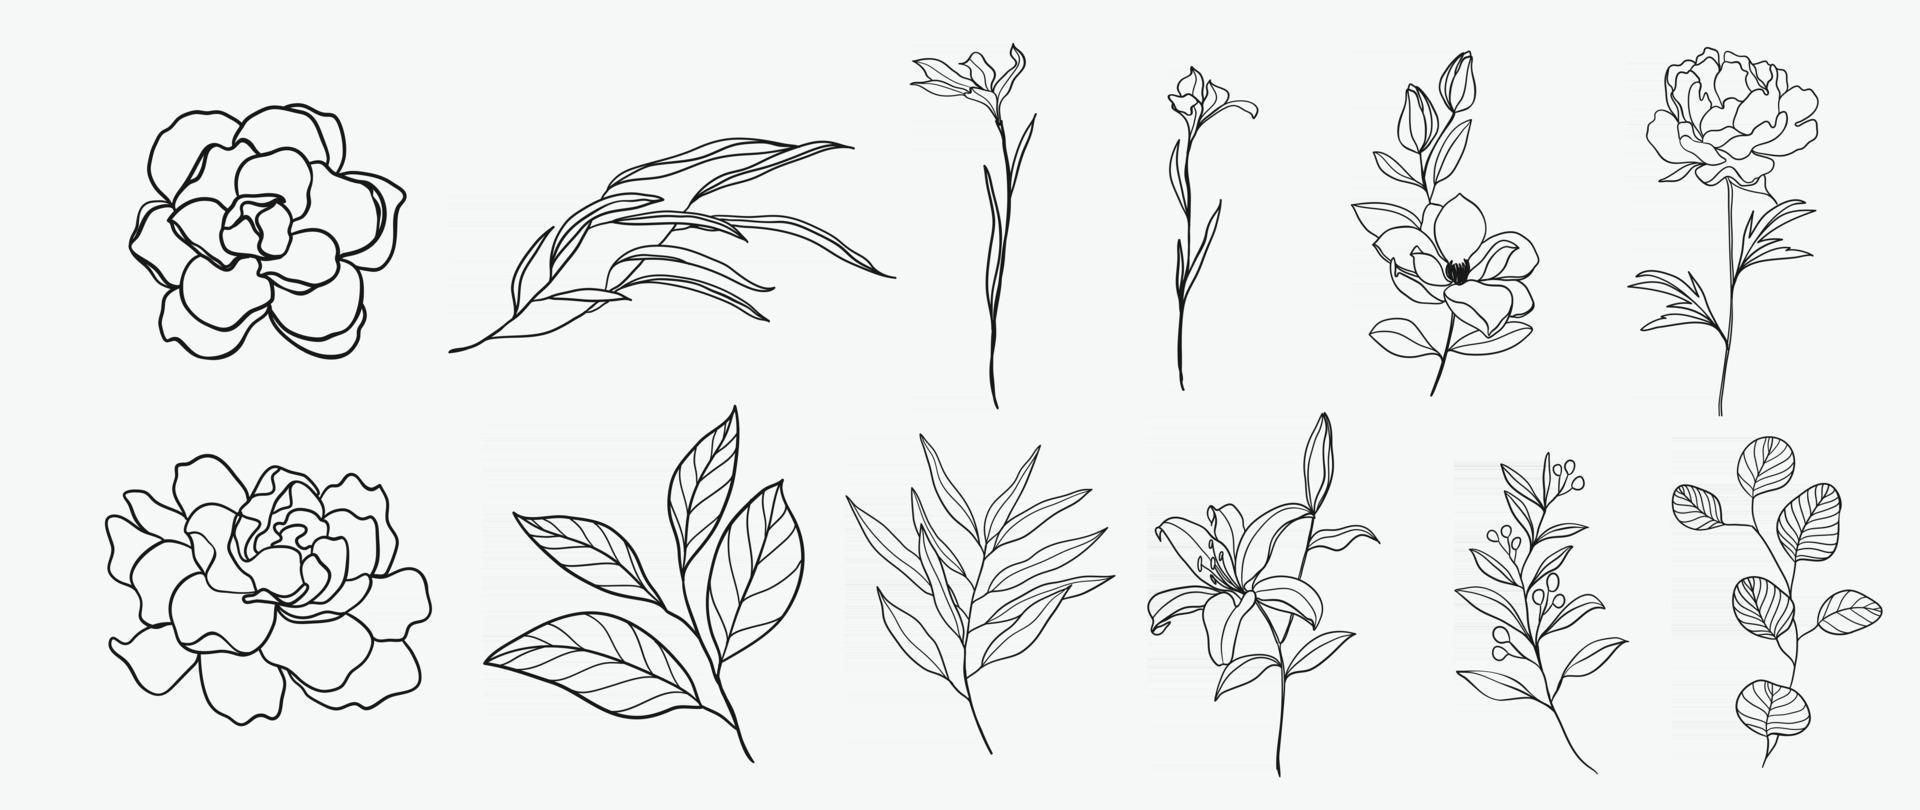 minimales botanisches Handzeichnungsdesign für Logo und Hochzeitseinladung. florale Strichzeichnungen. Blumen- und Blätterdesign-Kollektion für Blumensträuße, Karten- und Verpackungshintergrund. vektor